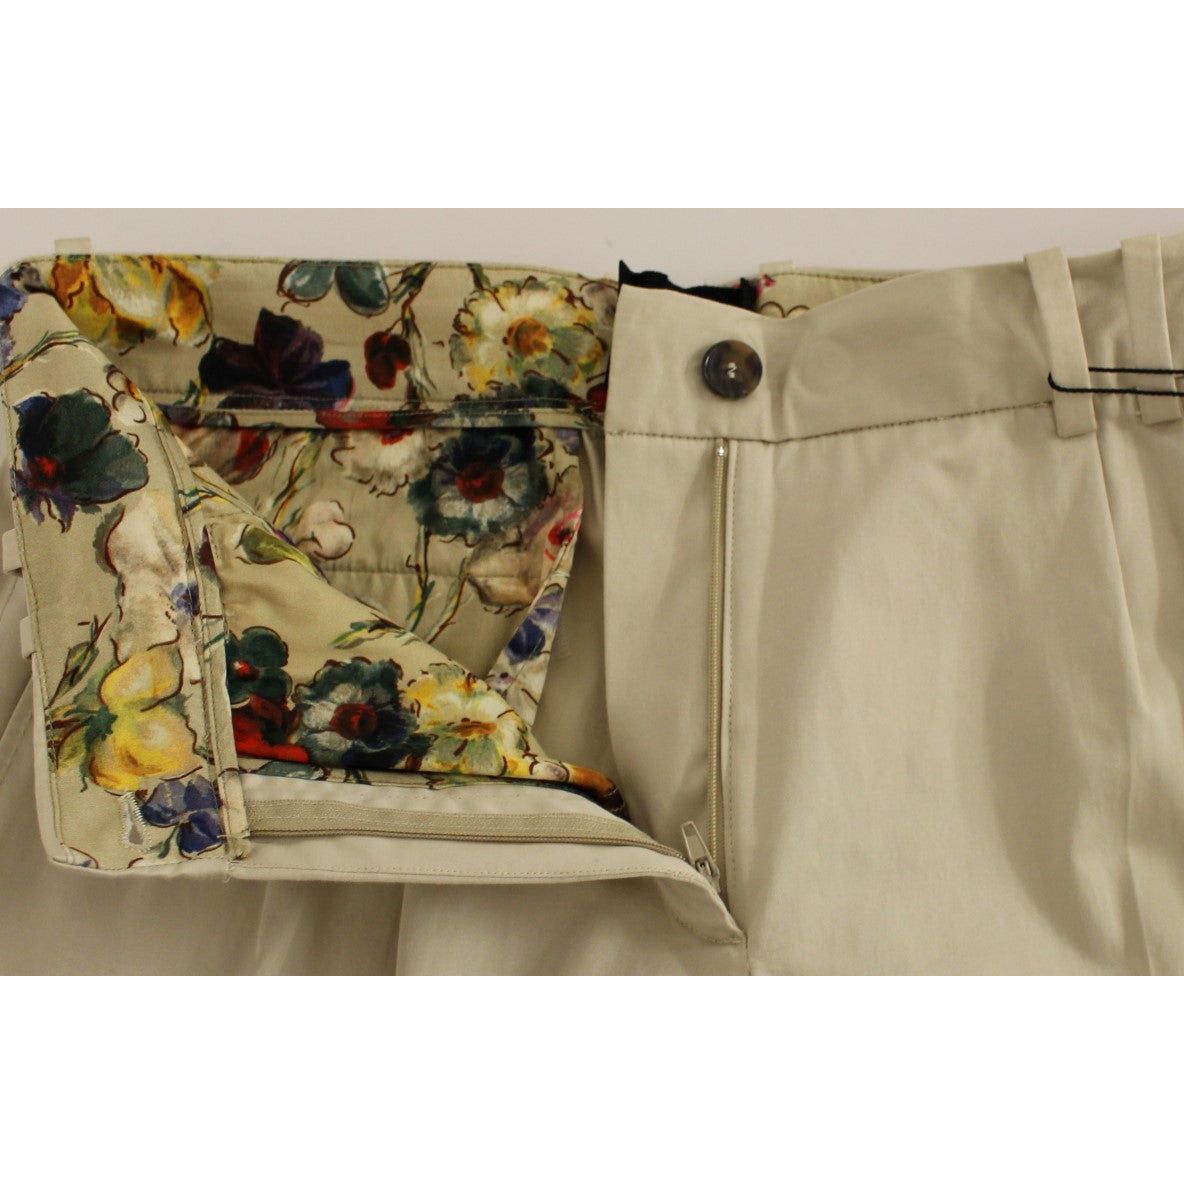 Dolce & Gabbana Elegant Beige Regular Fit Cotton Pants Jeans & Pants beige-cotton-chinos-pants